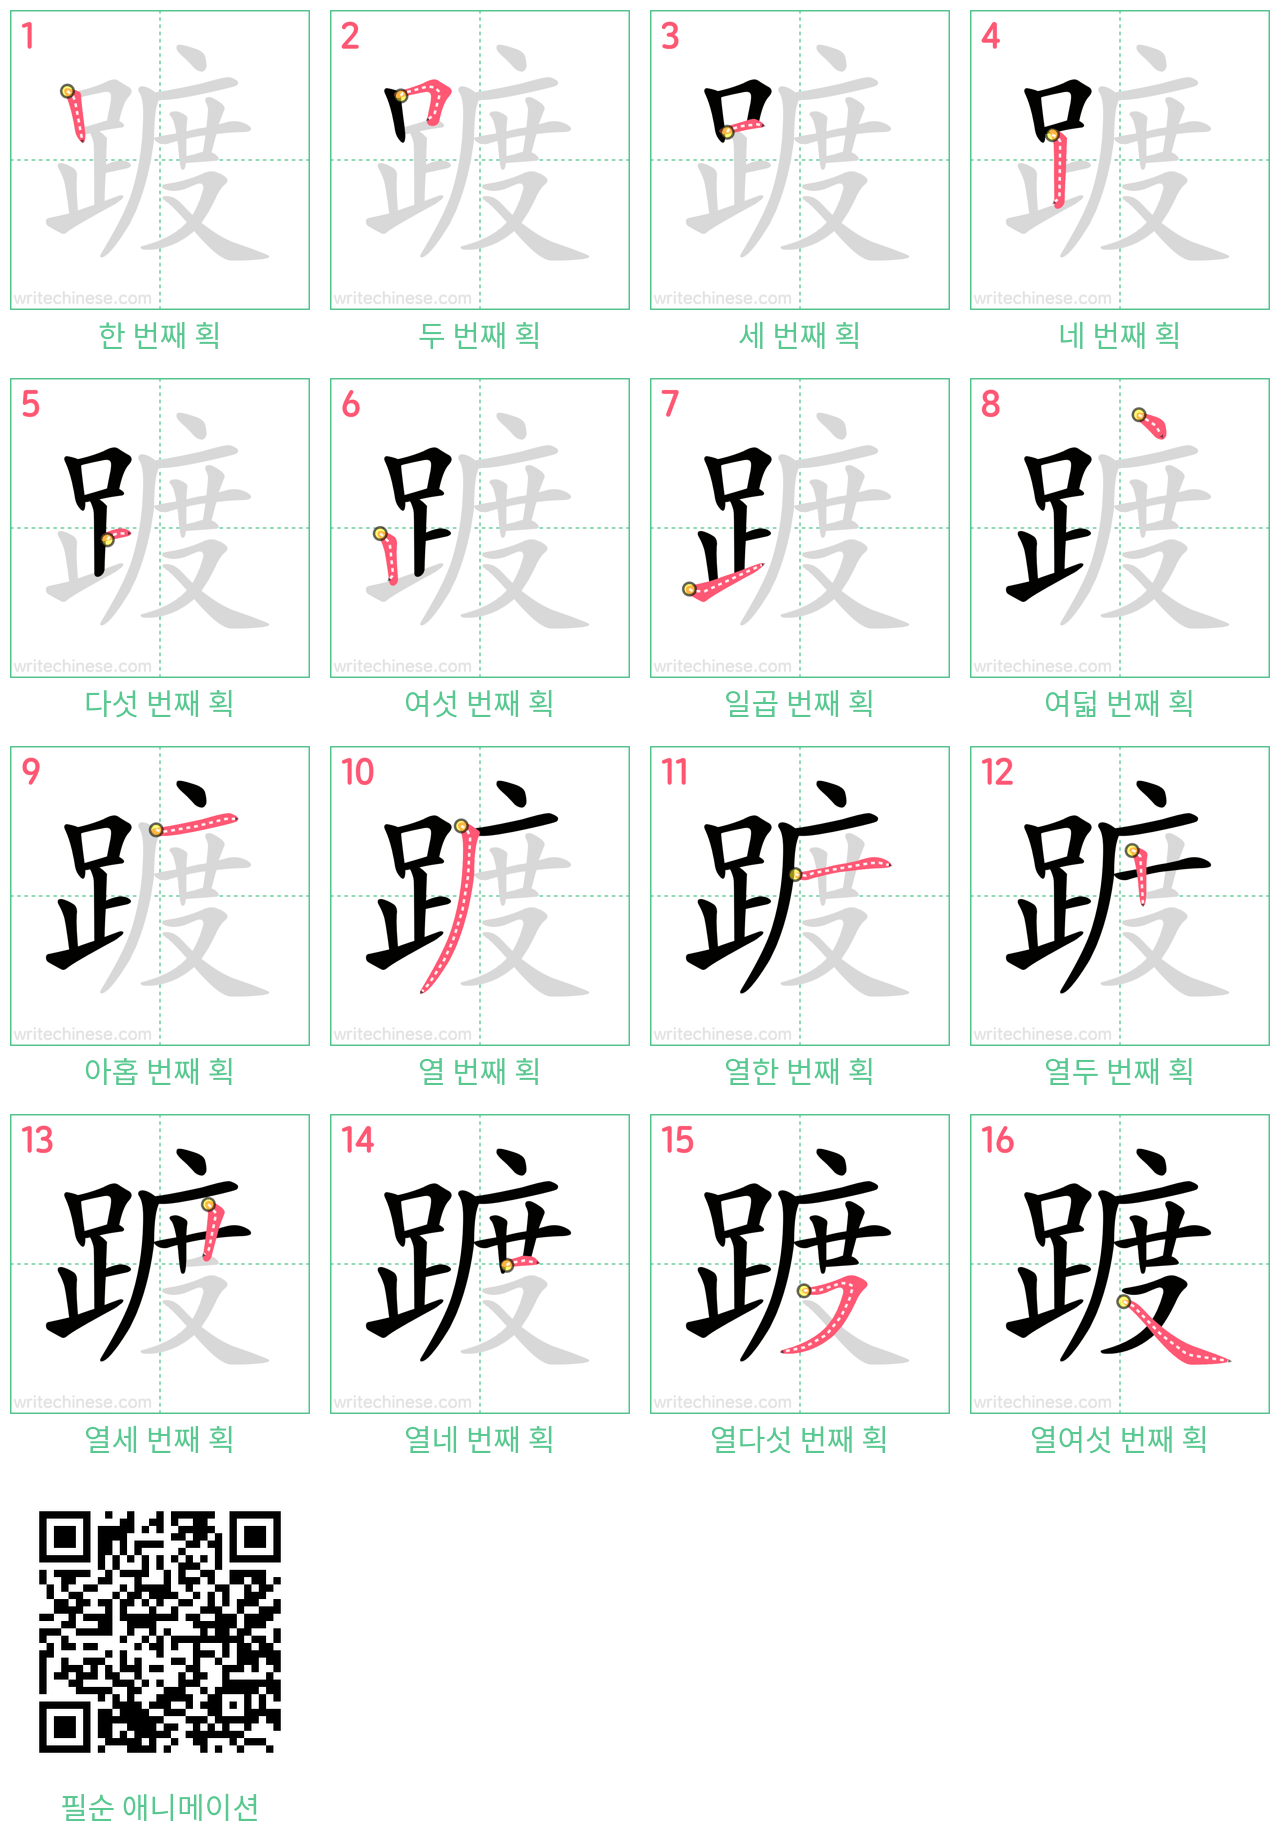 踱 step-by-step stroke order diagrams